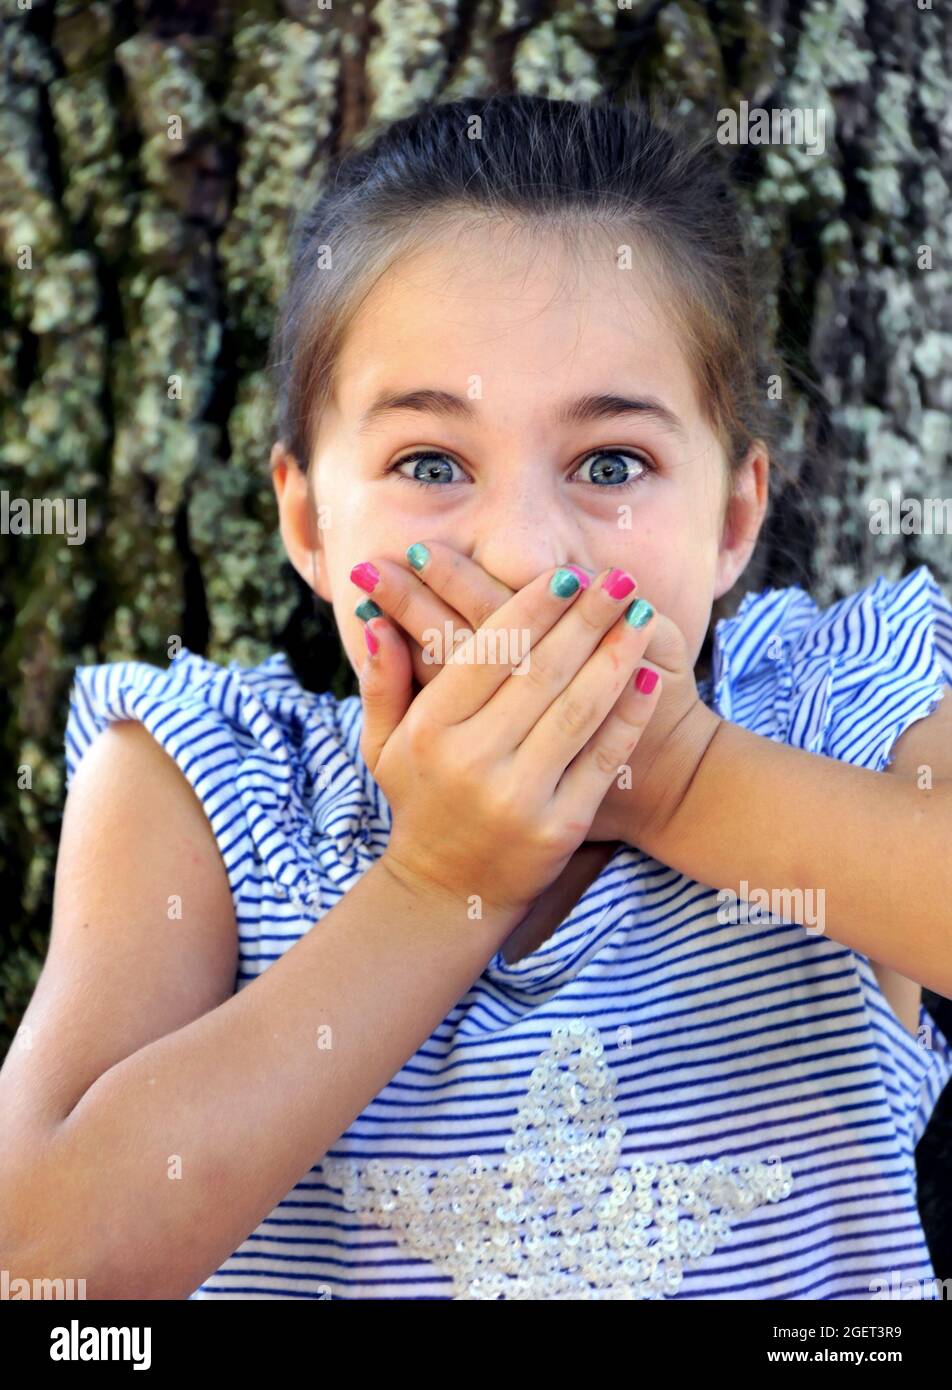 La petite fille tient dans son cri de surprise comme elle tient ses mains au-dessus de sa bouche. Elle est assise à l'extérieur par un arbre, et la photo est en gros plan. Banque D'Images